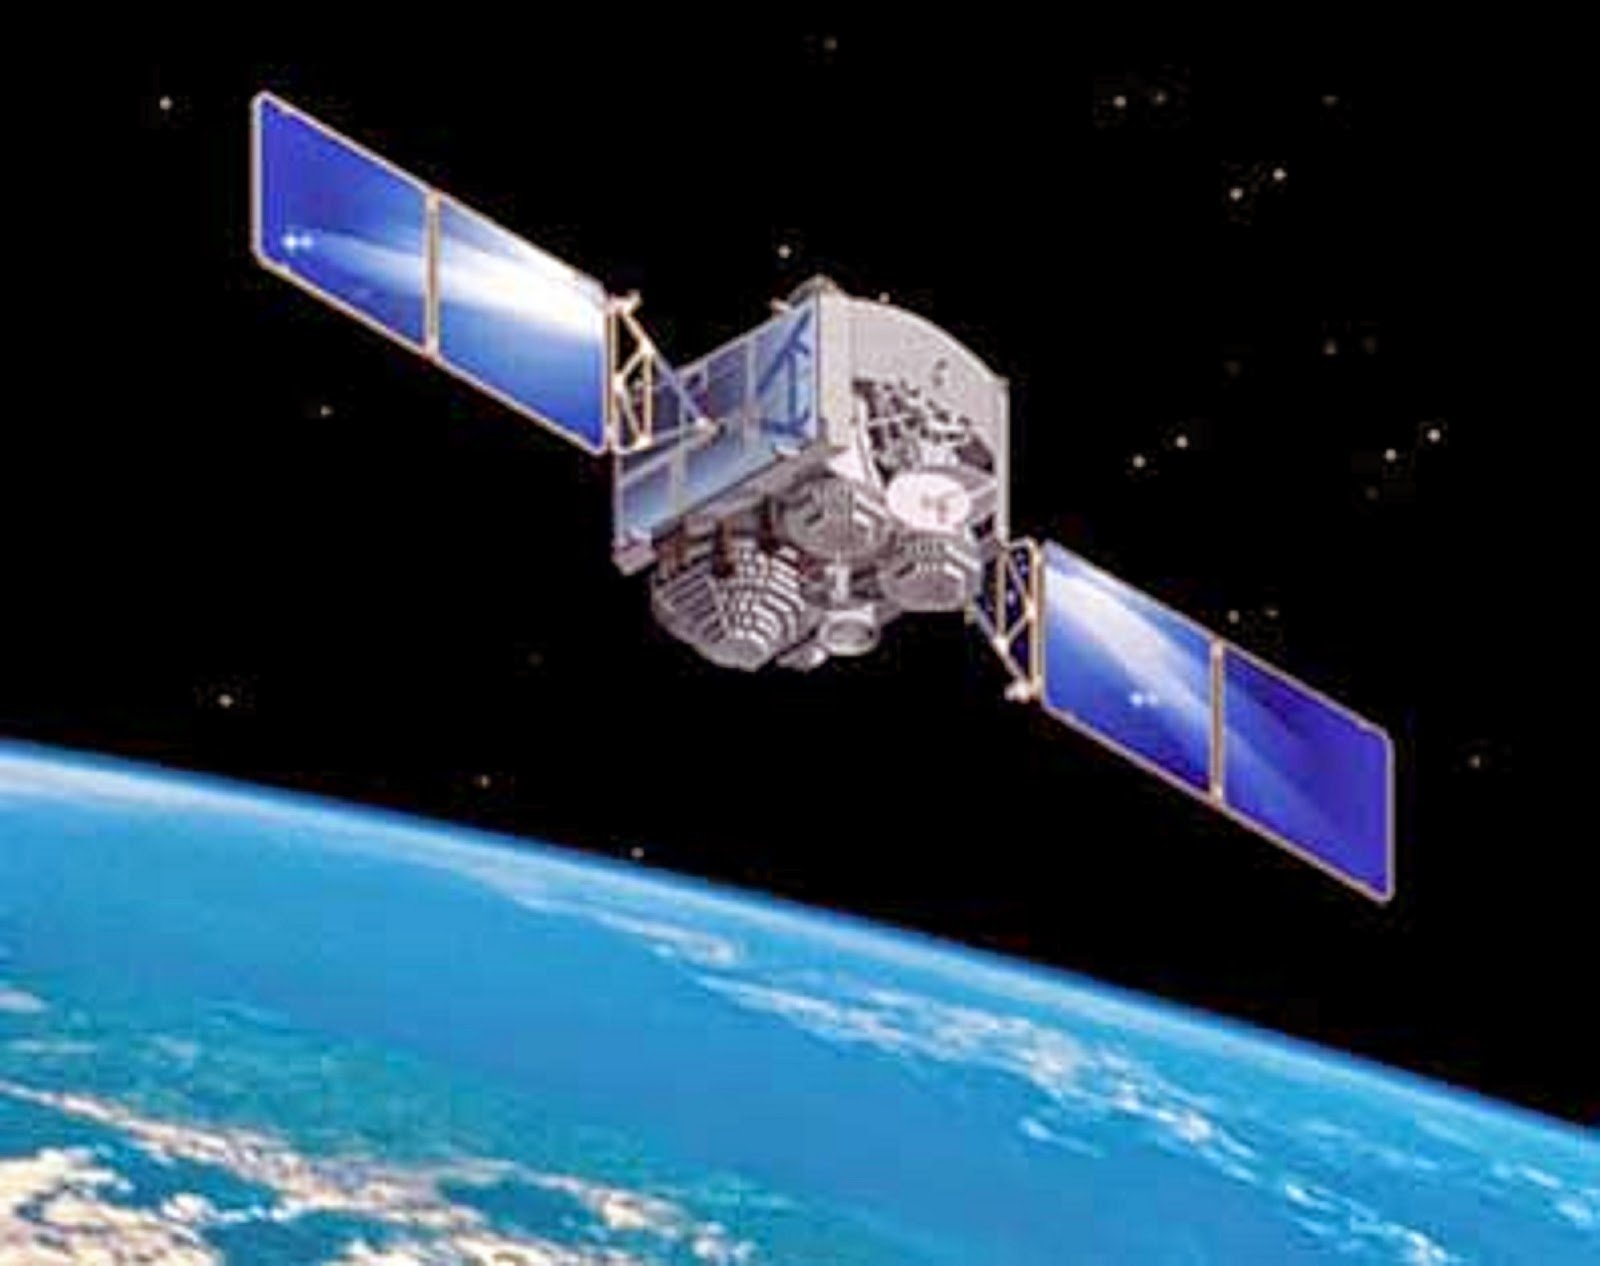 Πέφτει στη γη ο κινεζικός δορυφόρος Tianging-1